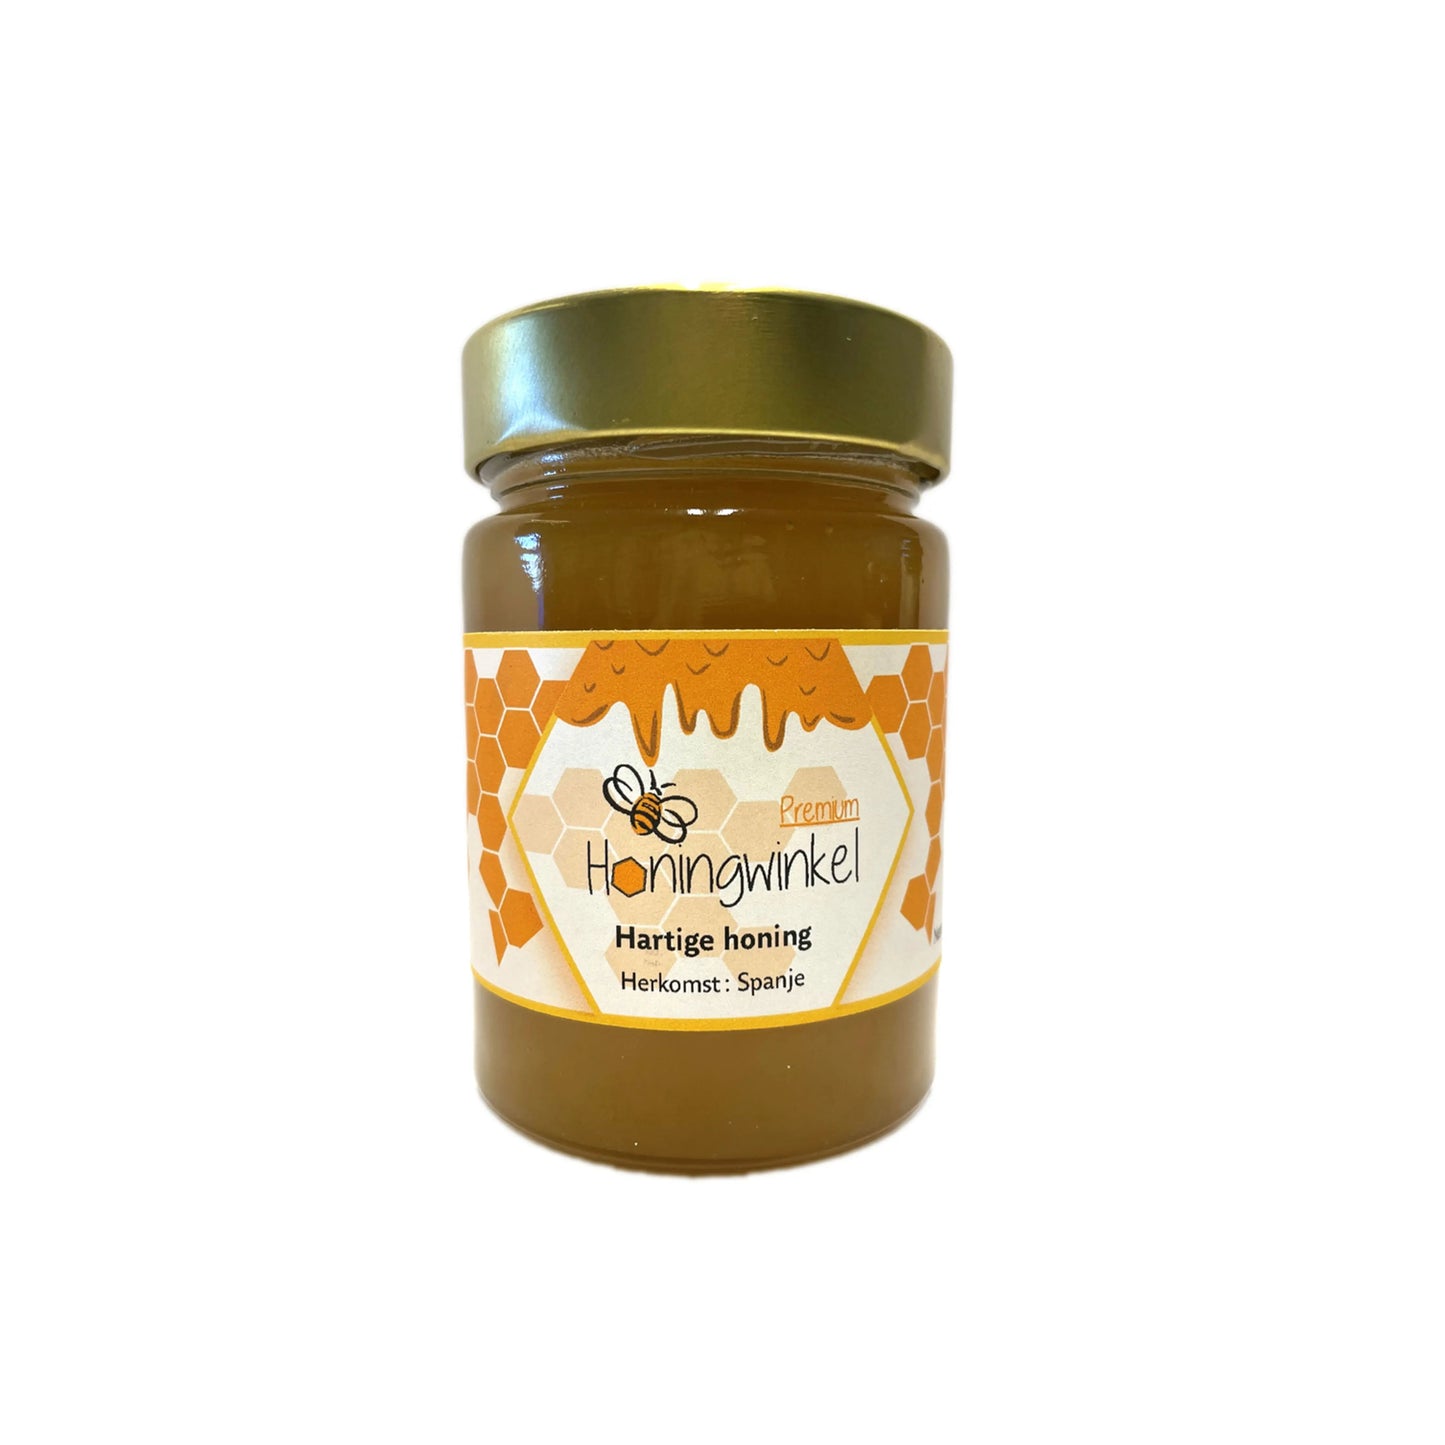 Premium hartige honing Spanje 450g Honingwinkel (vloeibaar) - Honingwinkel